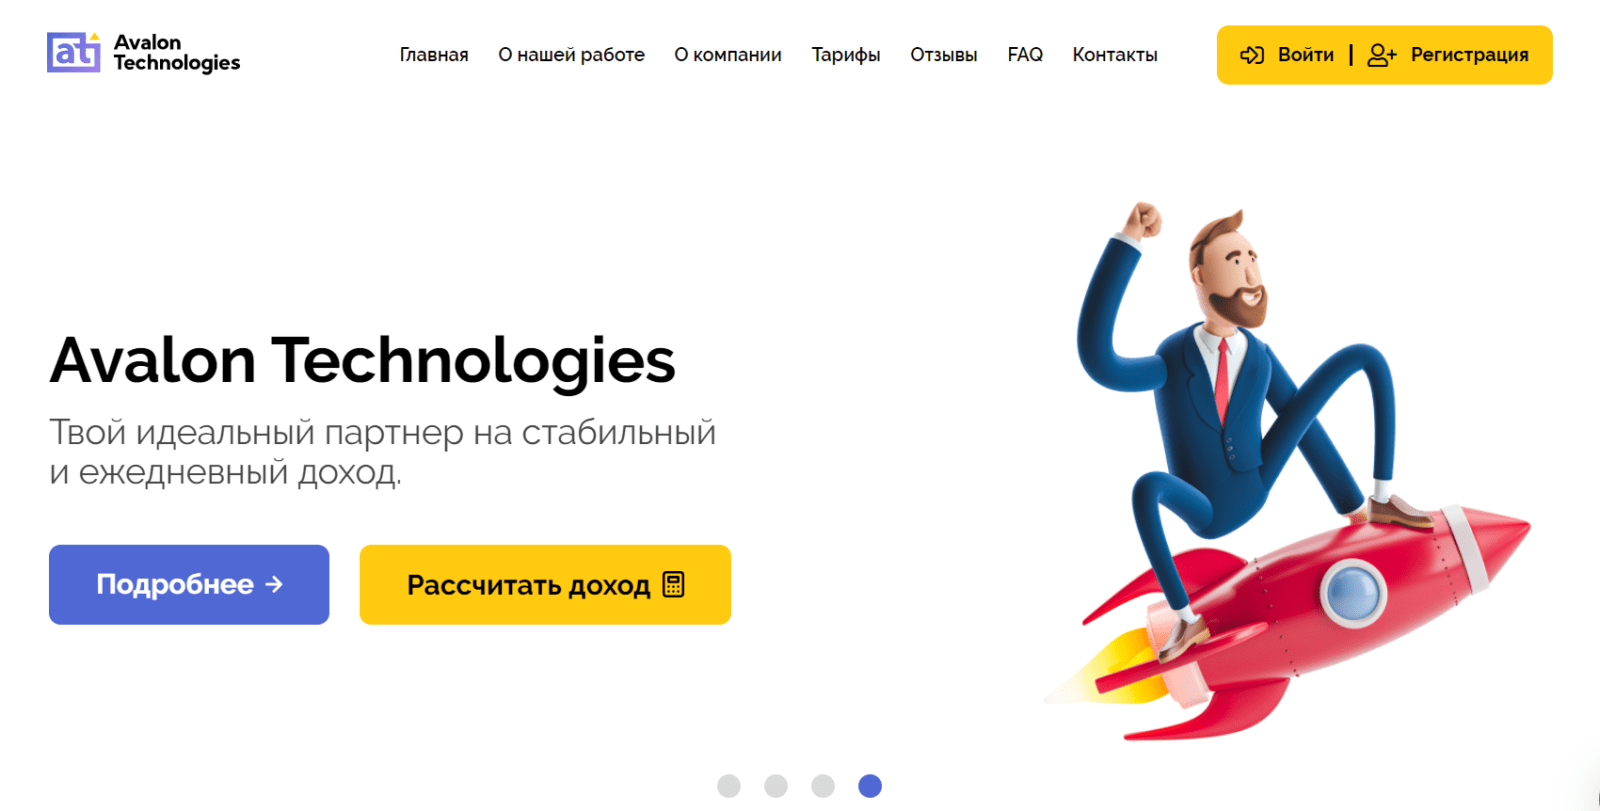 Официальный сайт букмекерской компании Parimatch для онлайн ставок на спорт в России.Ставки через интернет на реальные деньги в рублях!☝.